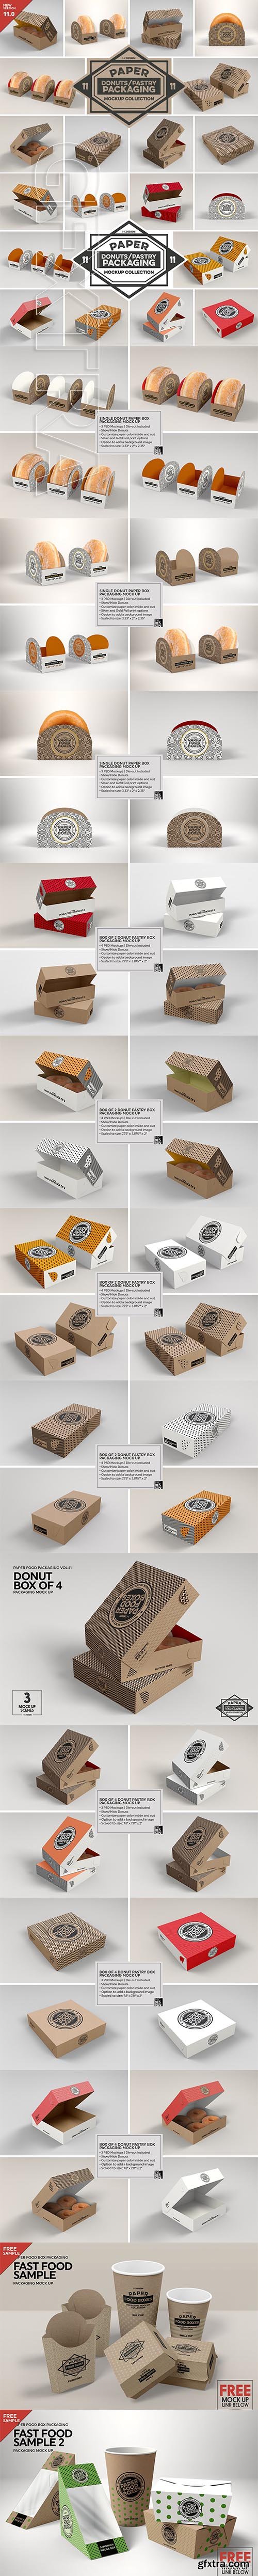 CreativeMarket - VOL.11 Food Box Packaging Mockups 2918568